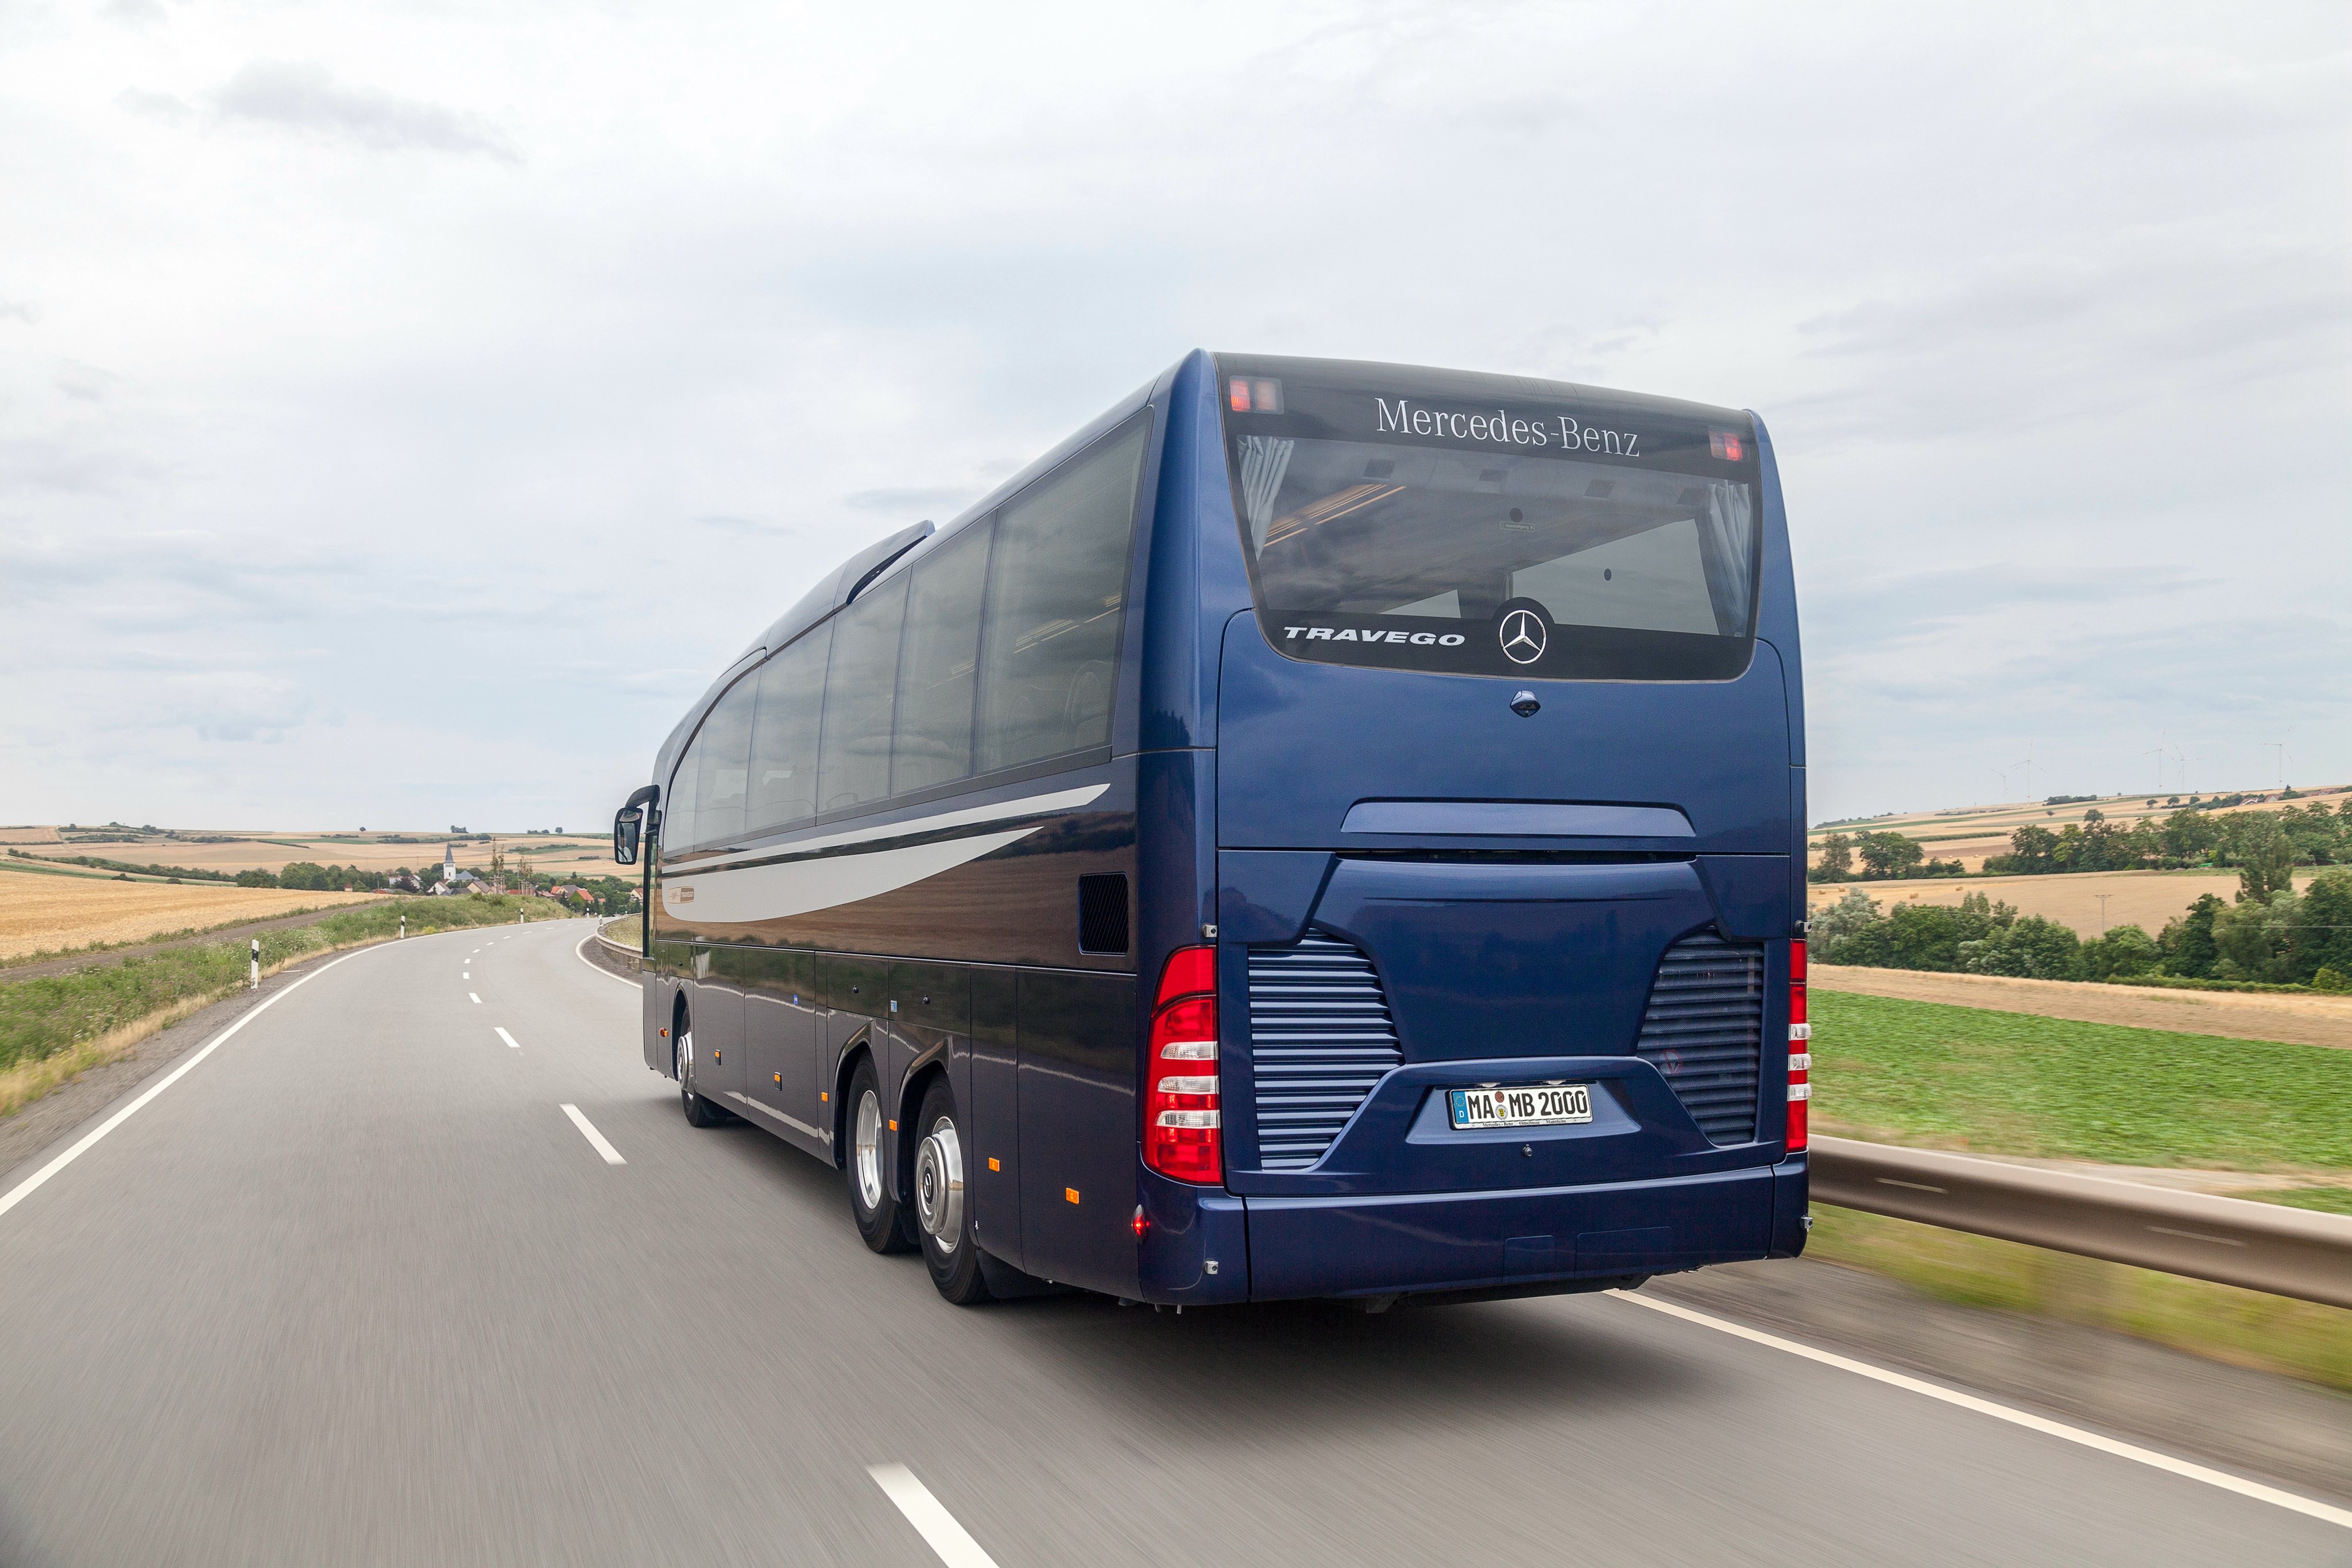 2014, Mercedes, Benz, Travego, M, O580, Bus, Semi, Tractor, Transport Wallpaper